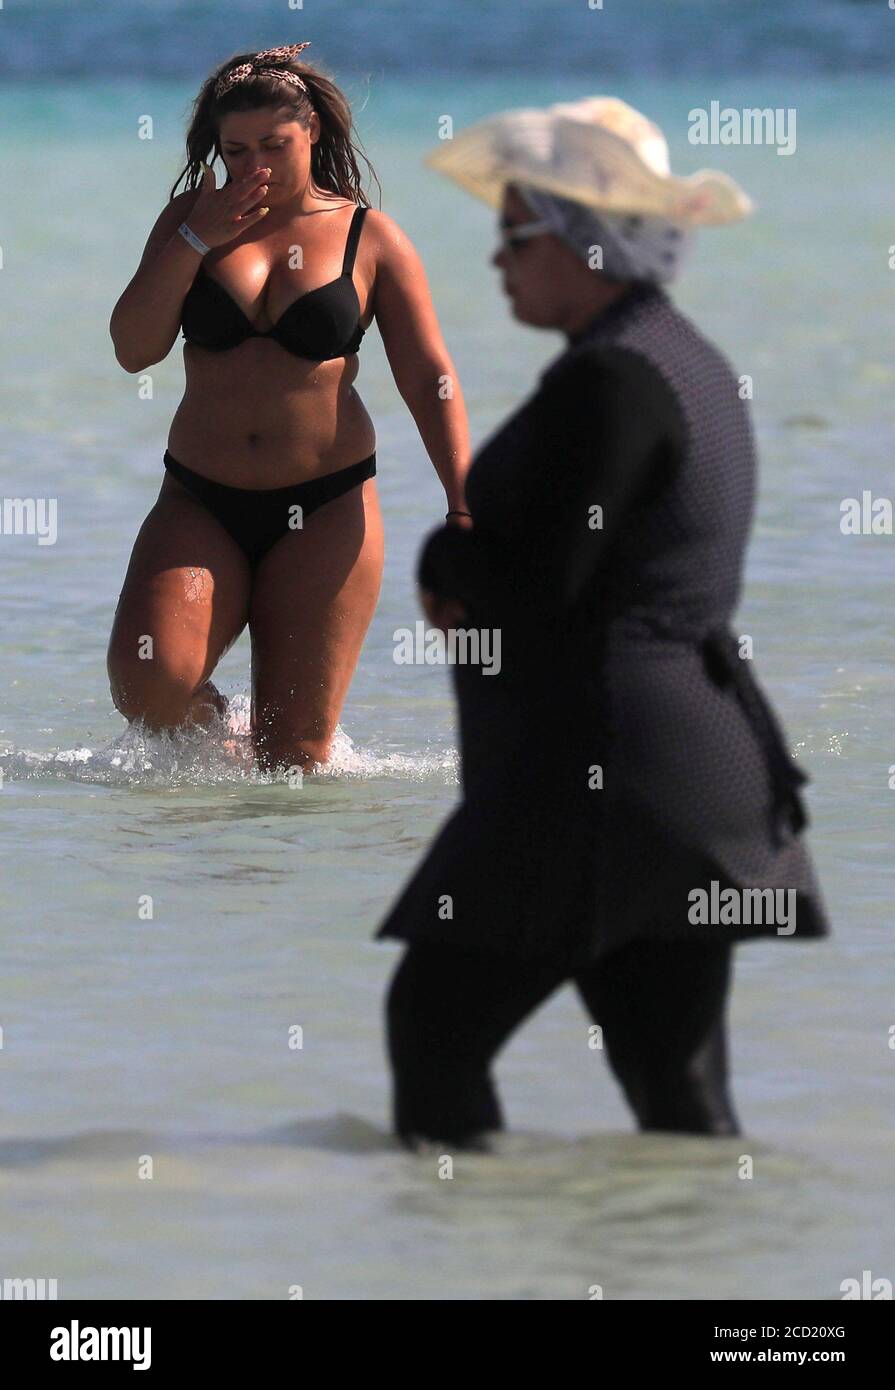 Un touriste portant un bikini marche près d'une femme portant un « burkini  », un maillot de bain intégral conçu pour les femmes musulmanes, pendant des  vacances d'été sur la plage d'Orange